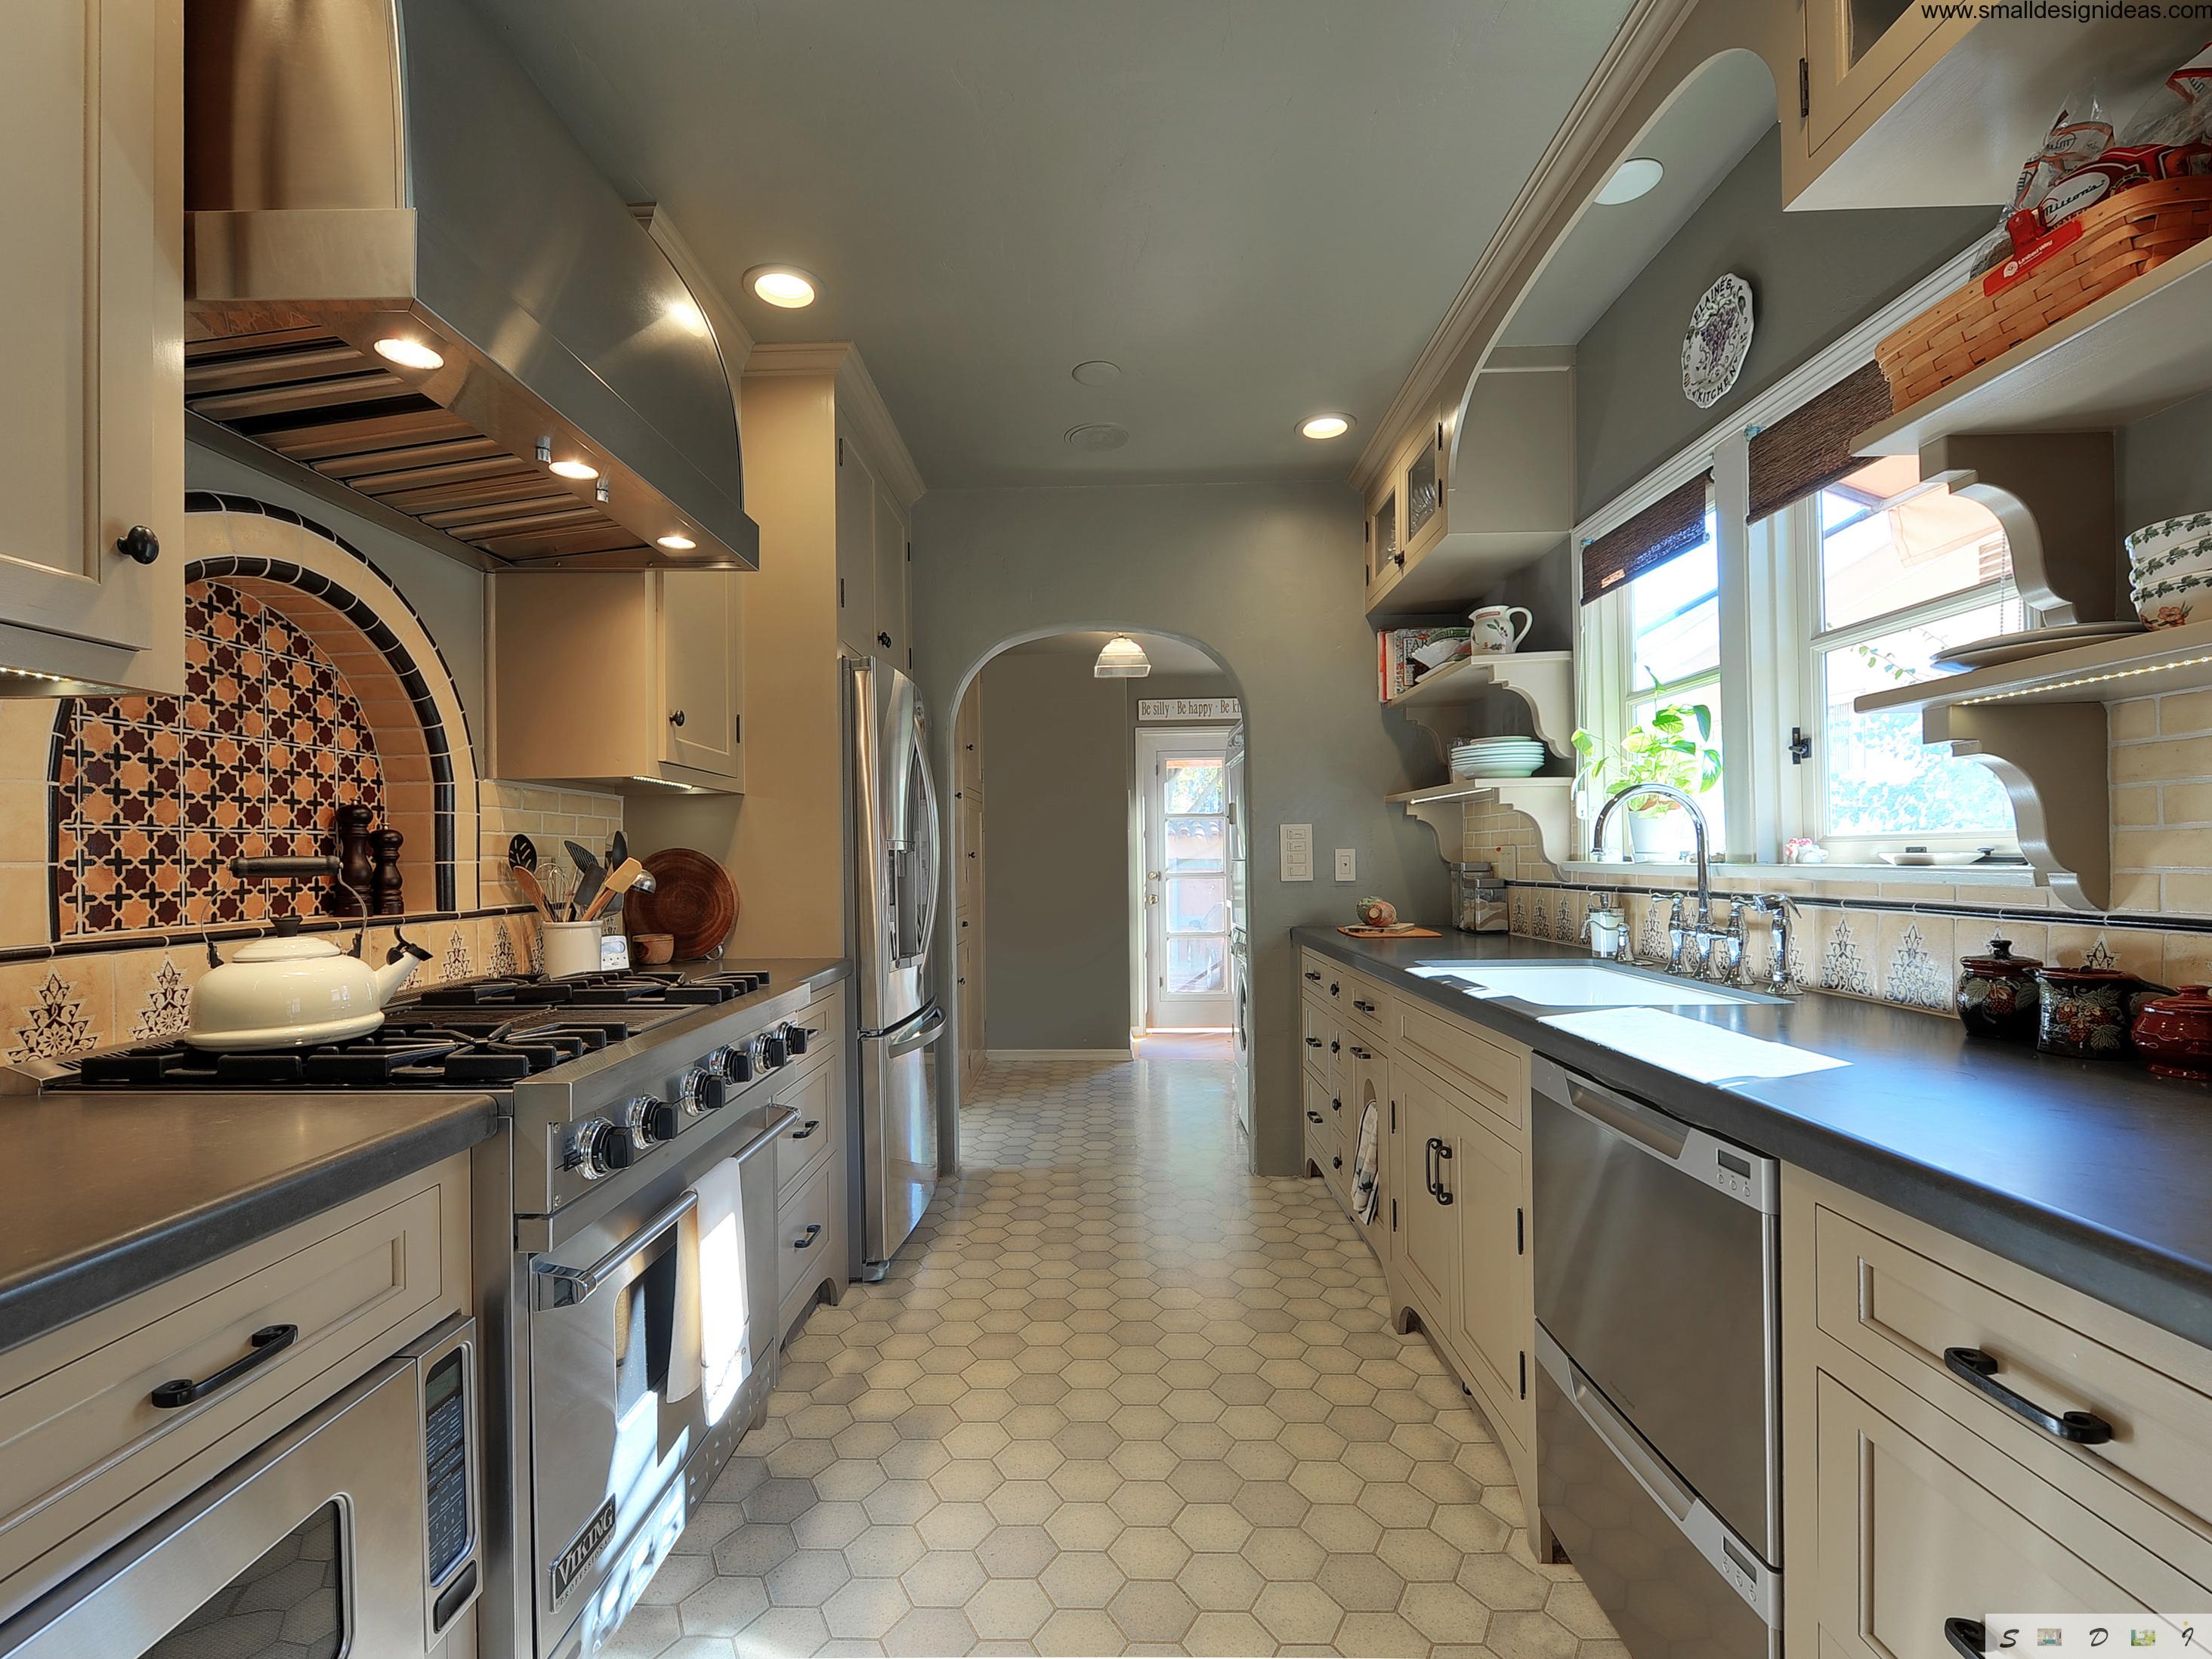 kitchen design idea for galley kitchen